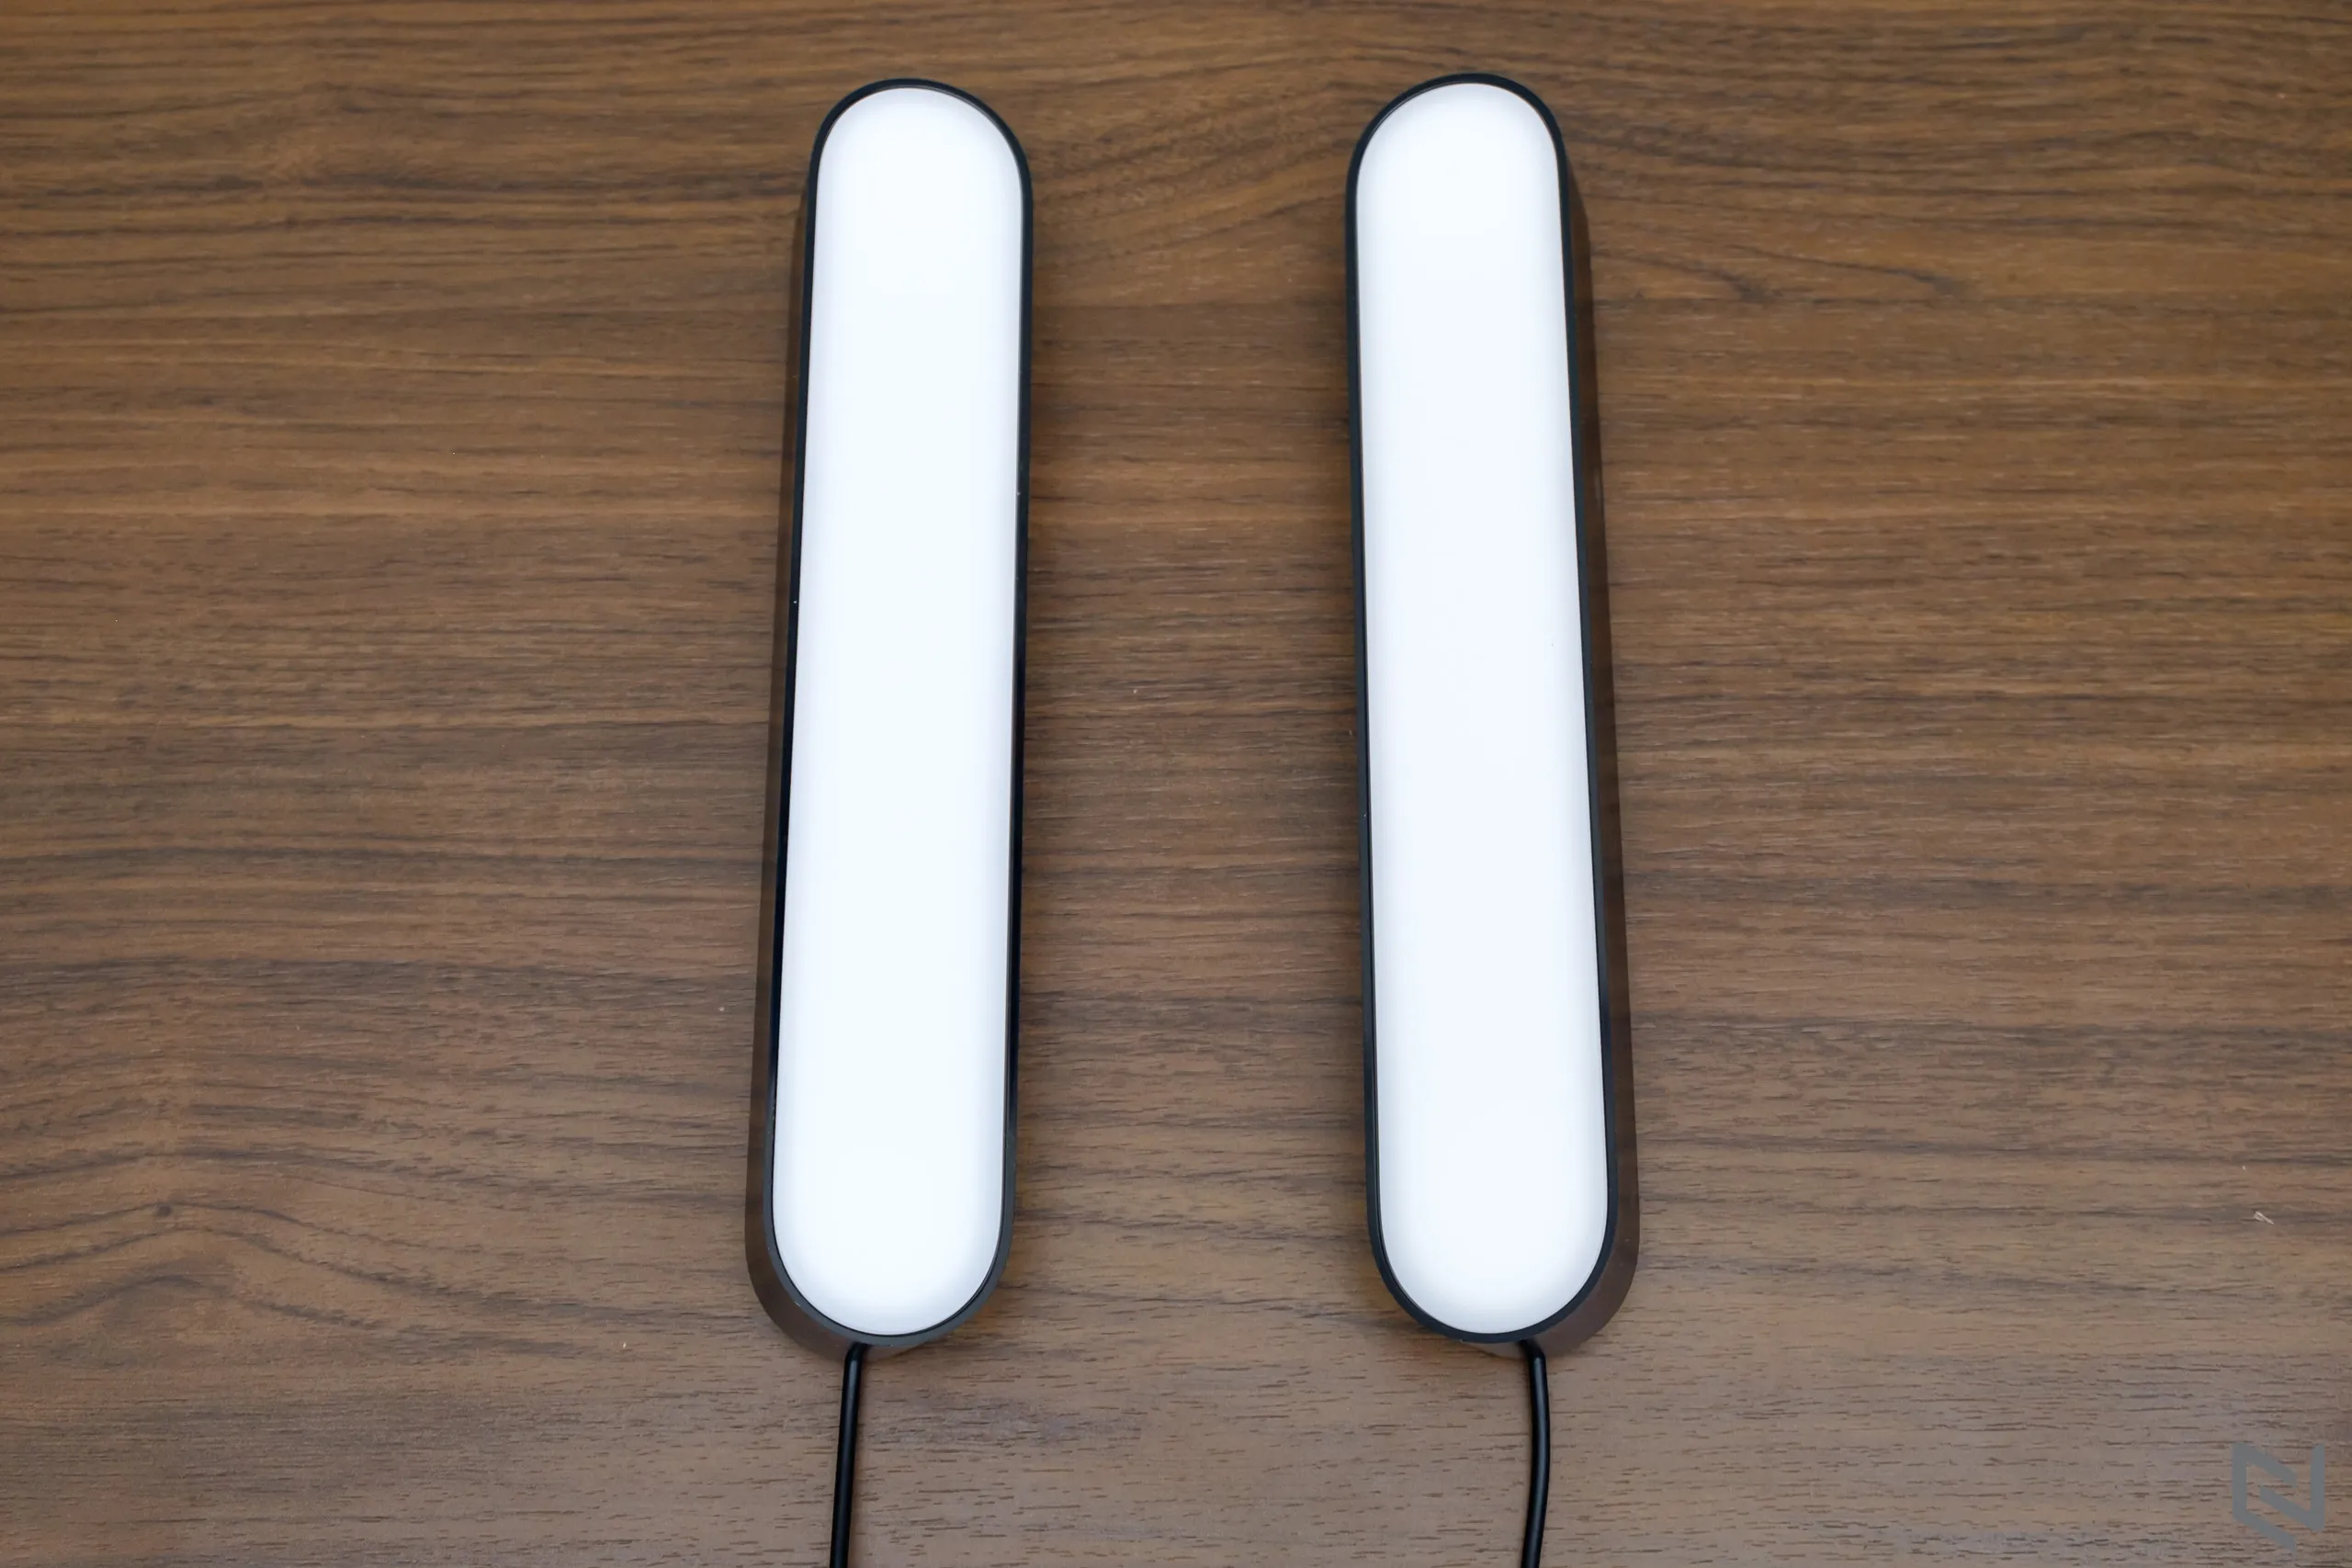 Trải nghiệm đèn thông minh Philips Hue Play Light Bar - Trang trí và tăng thêm cảm xúc cho góc thư giãn của bạn